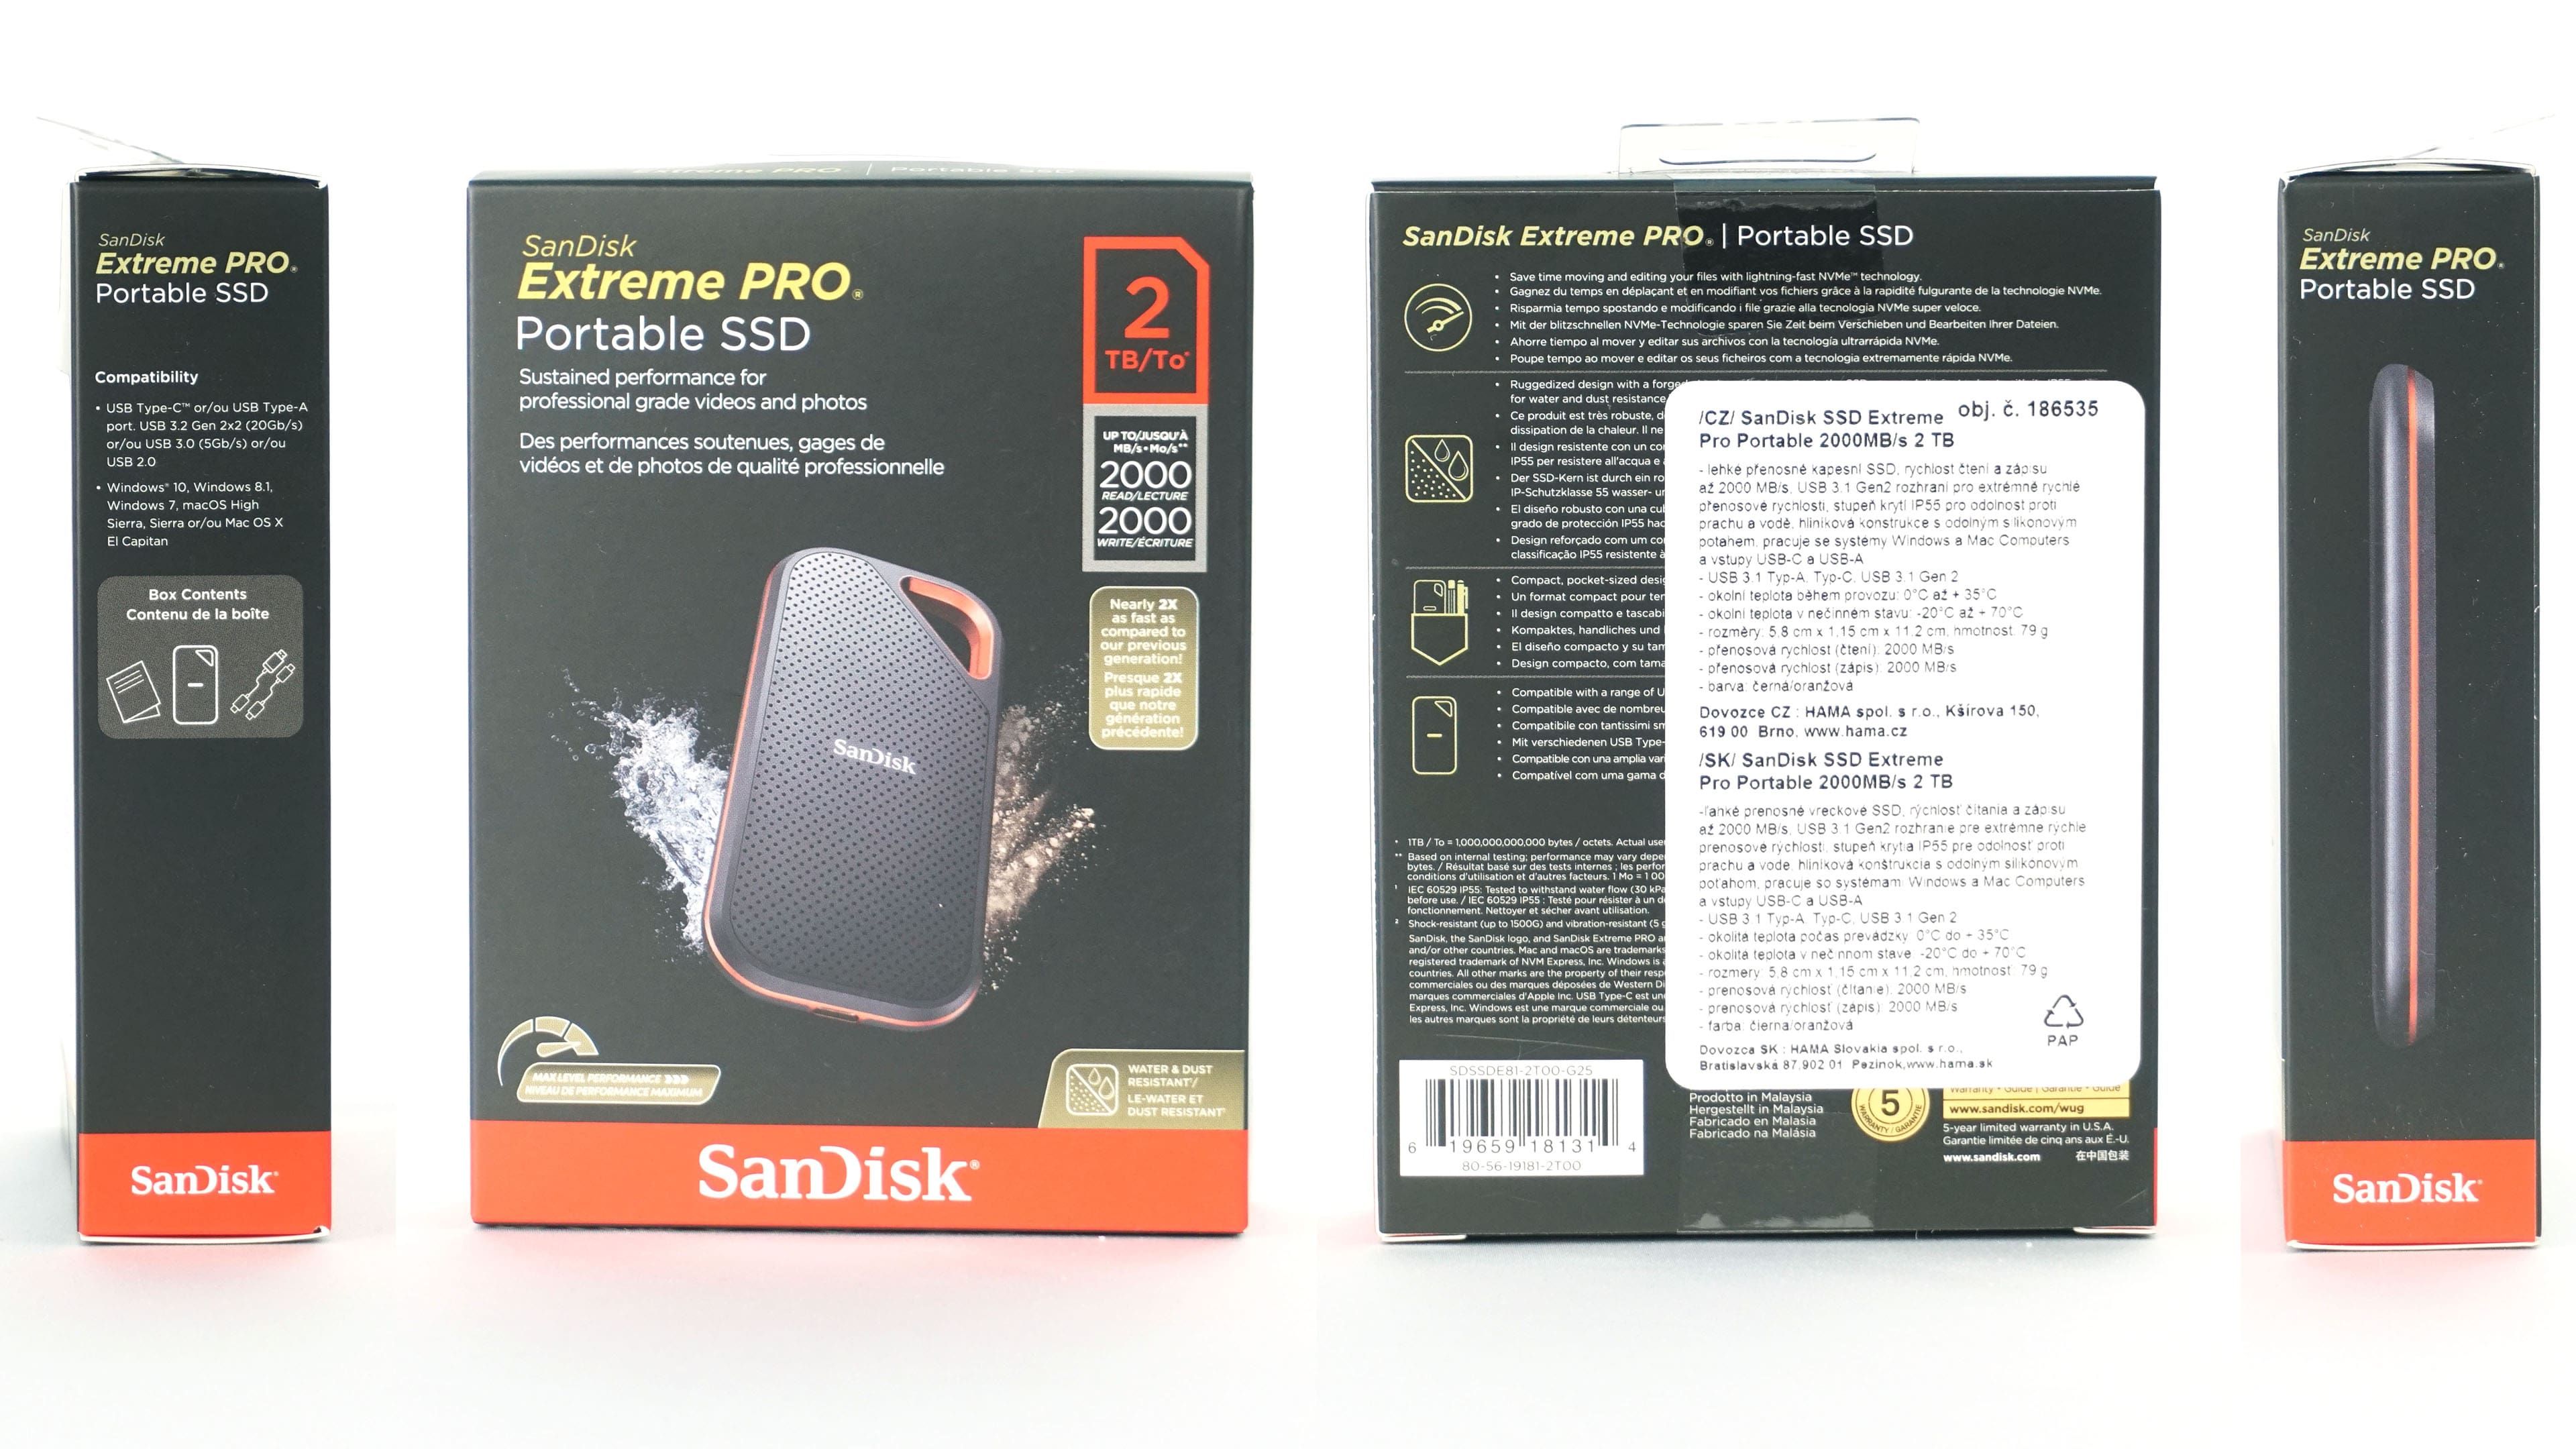 SanDisk Extreme Pro SSD V2: bigger and faster - HWCooling.net